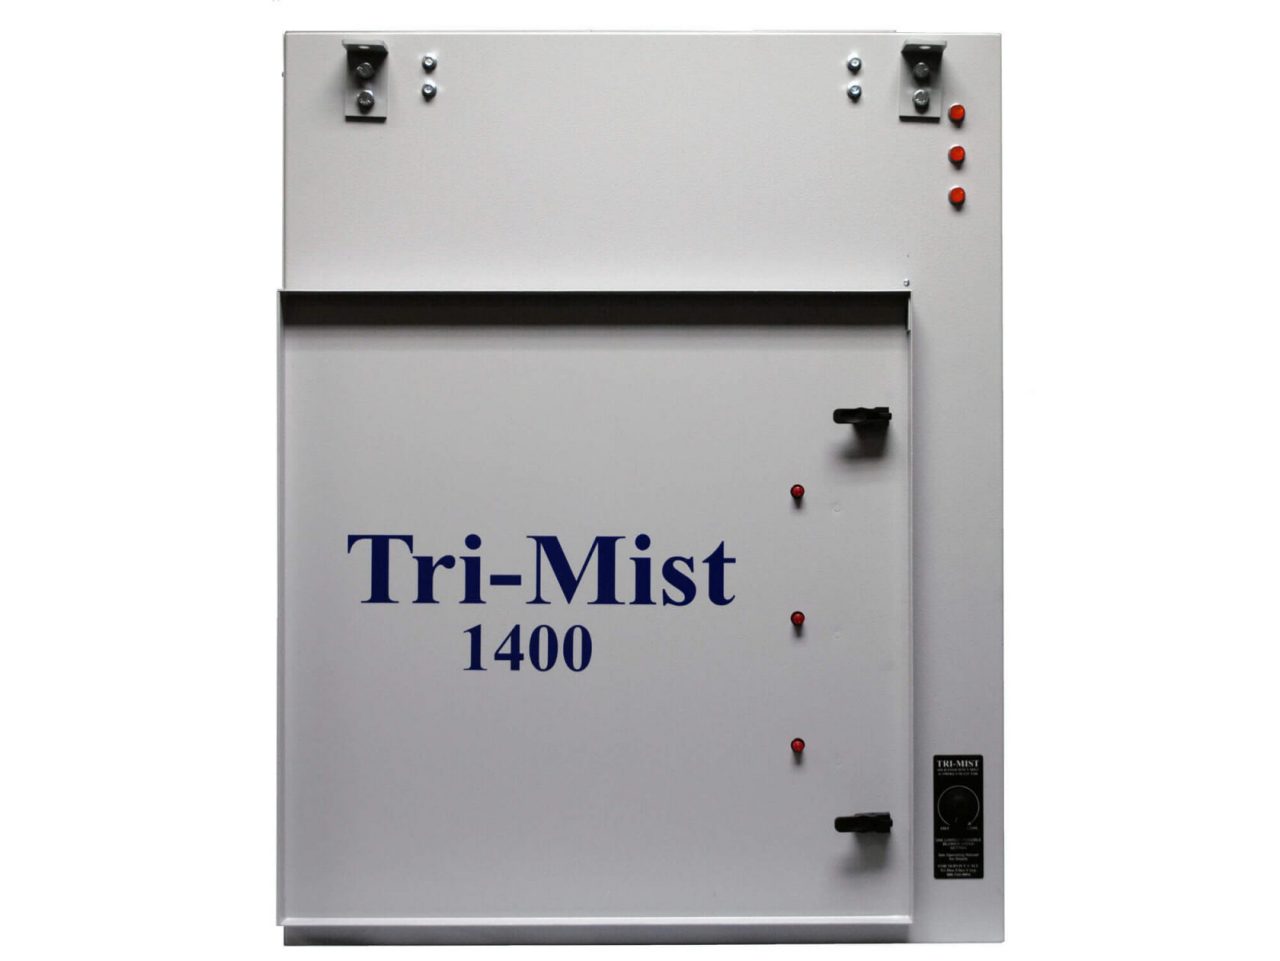 Tri-Mist 1400